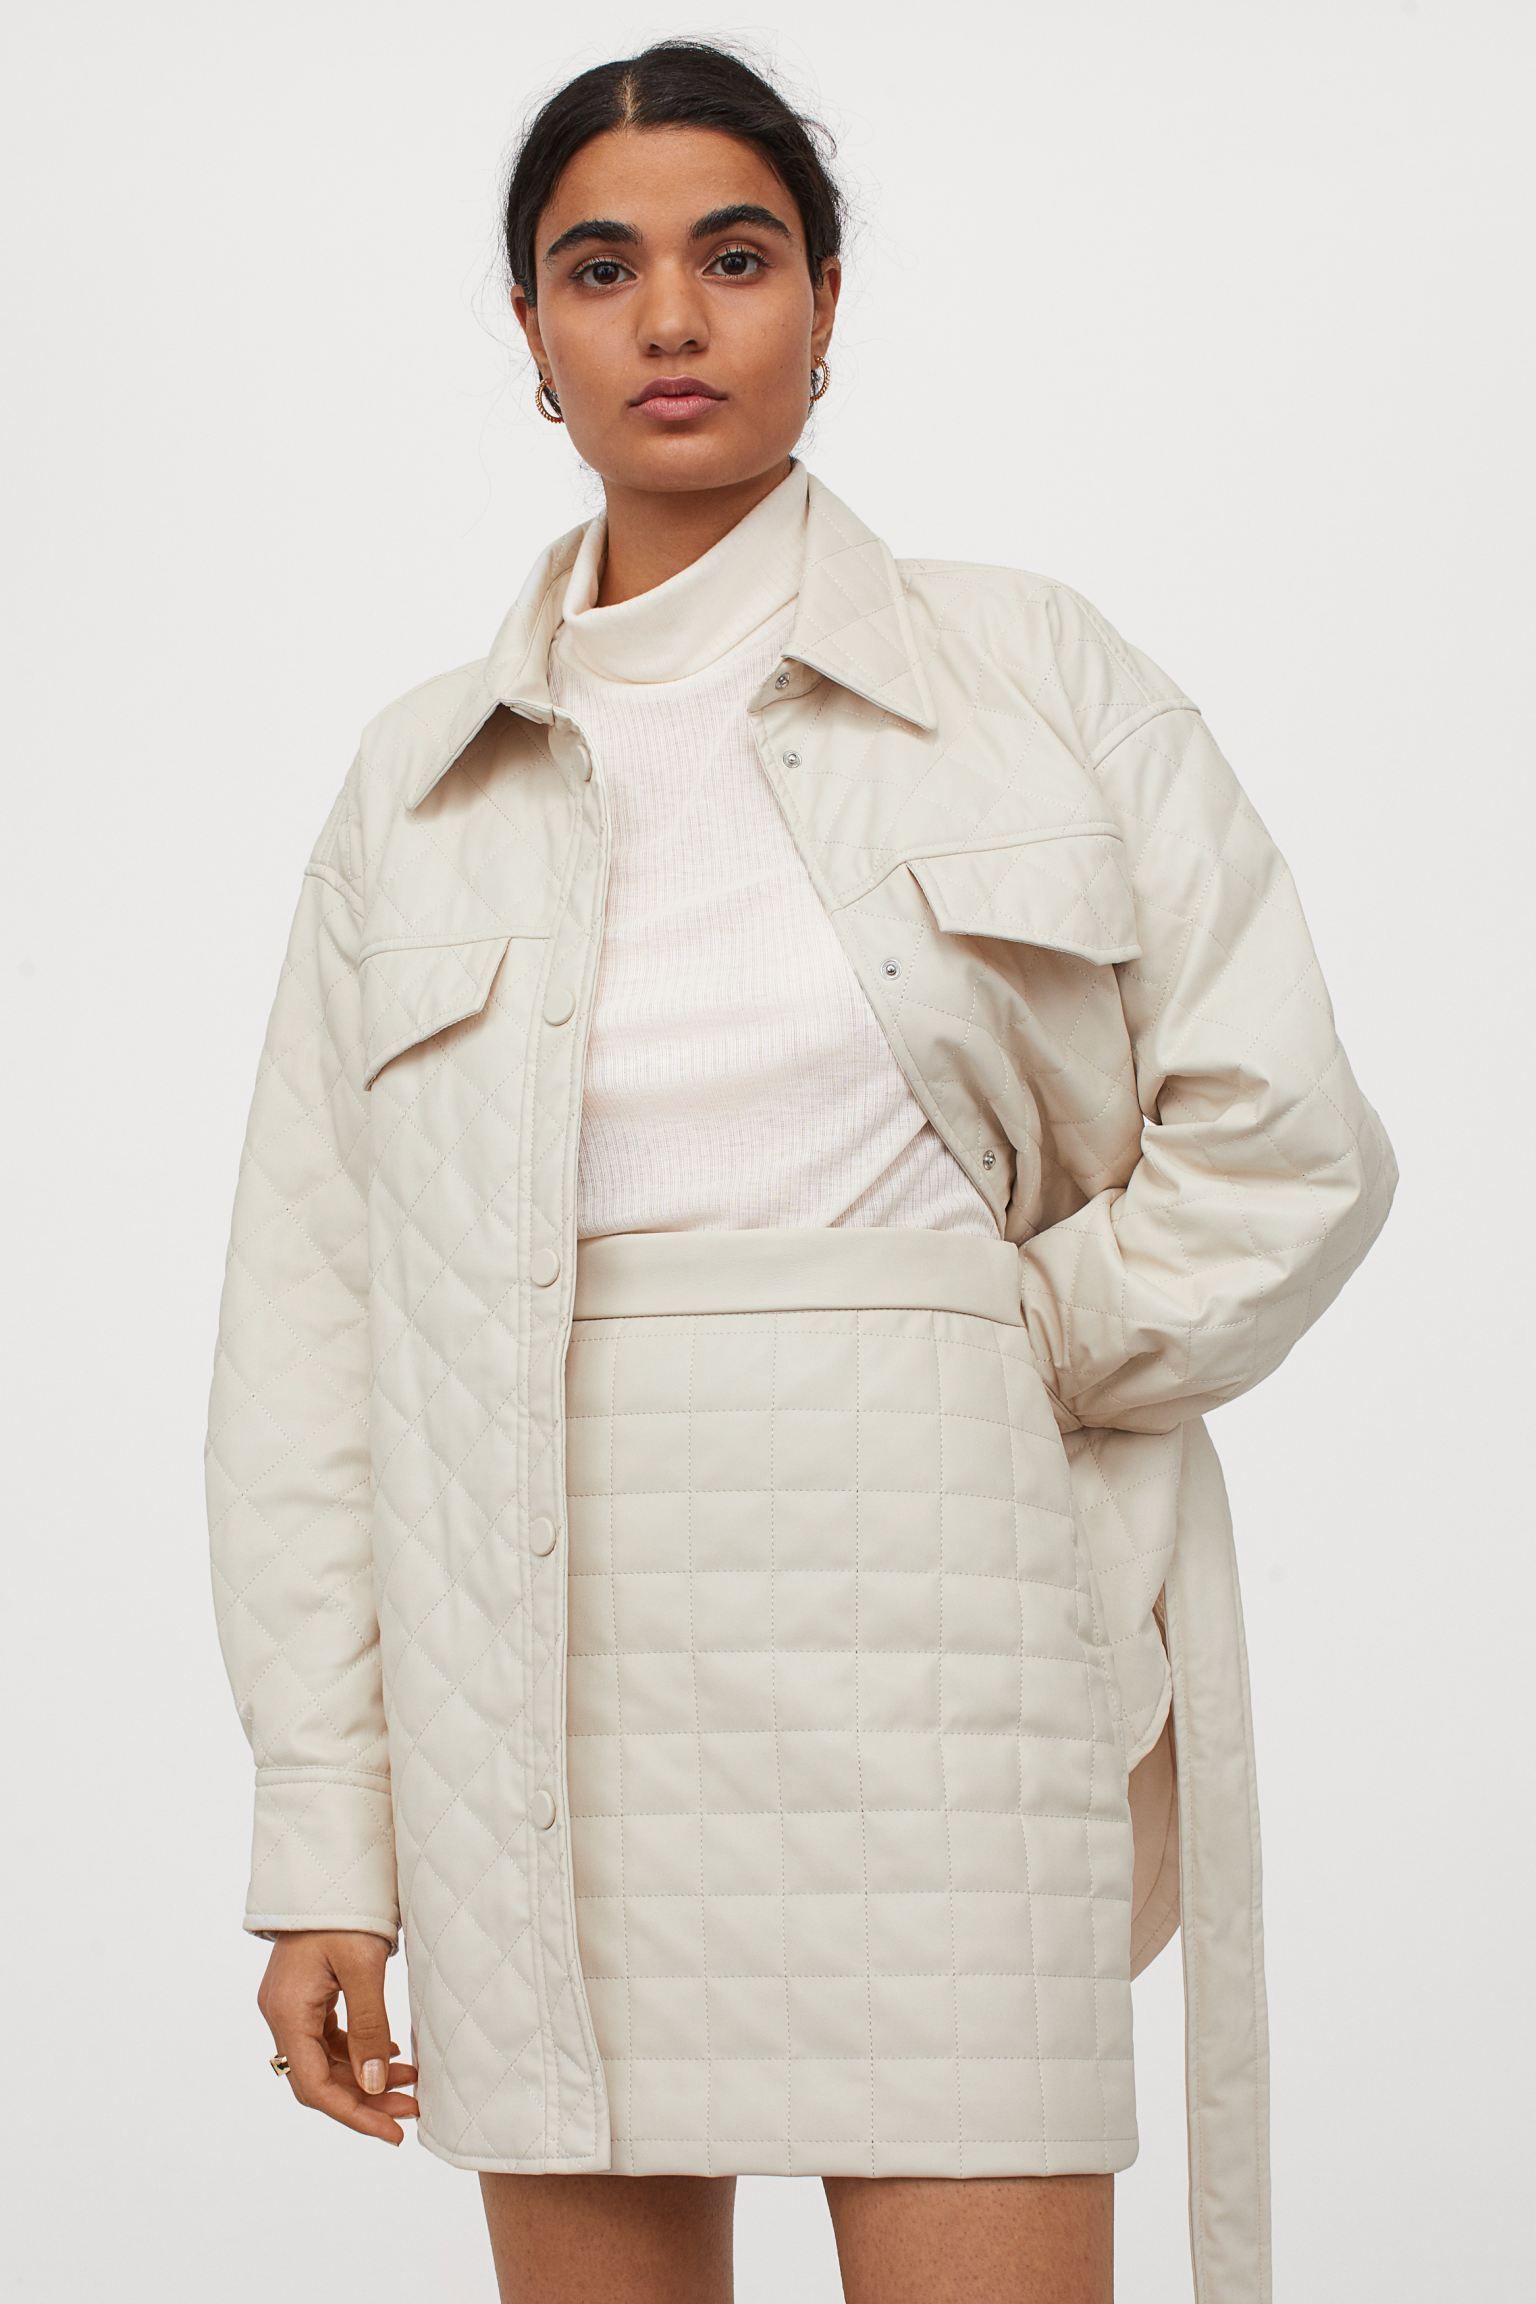 conjunto chaqueta y minifalda acolchada de H&M tendencia